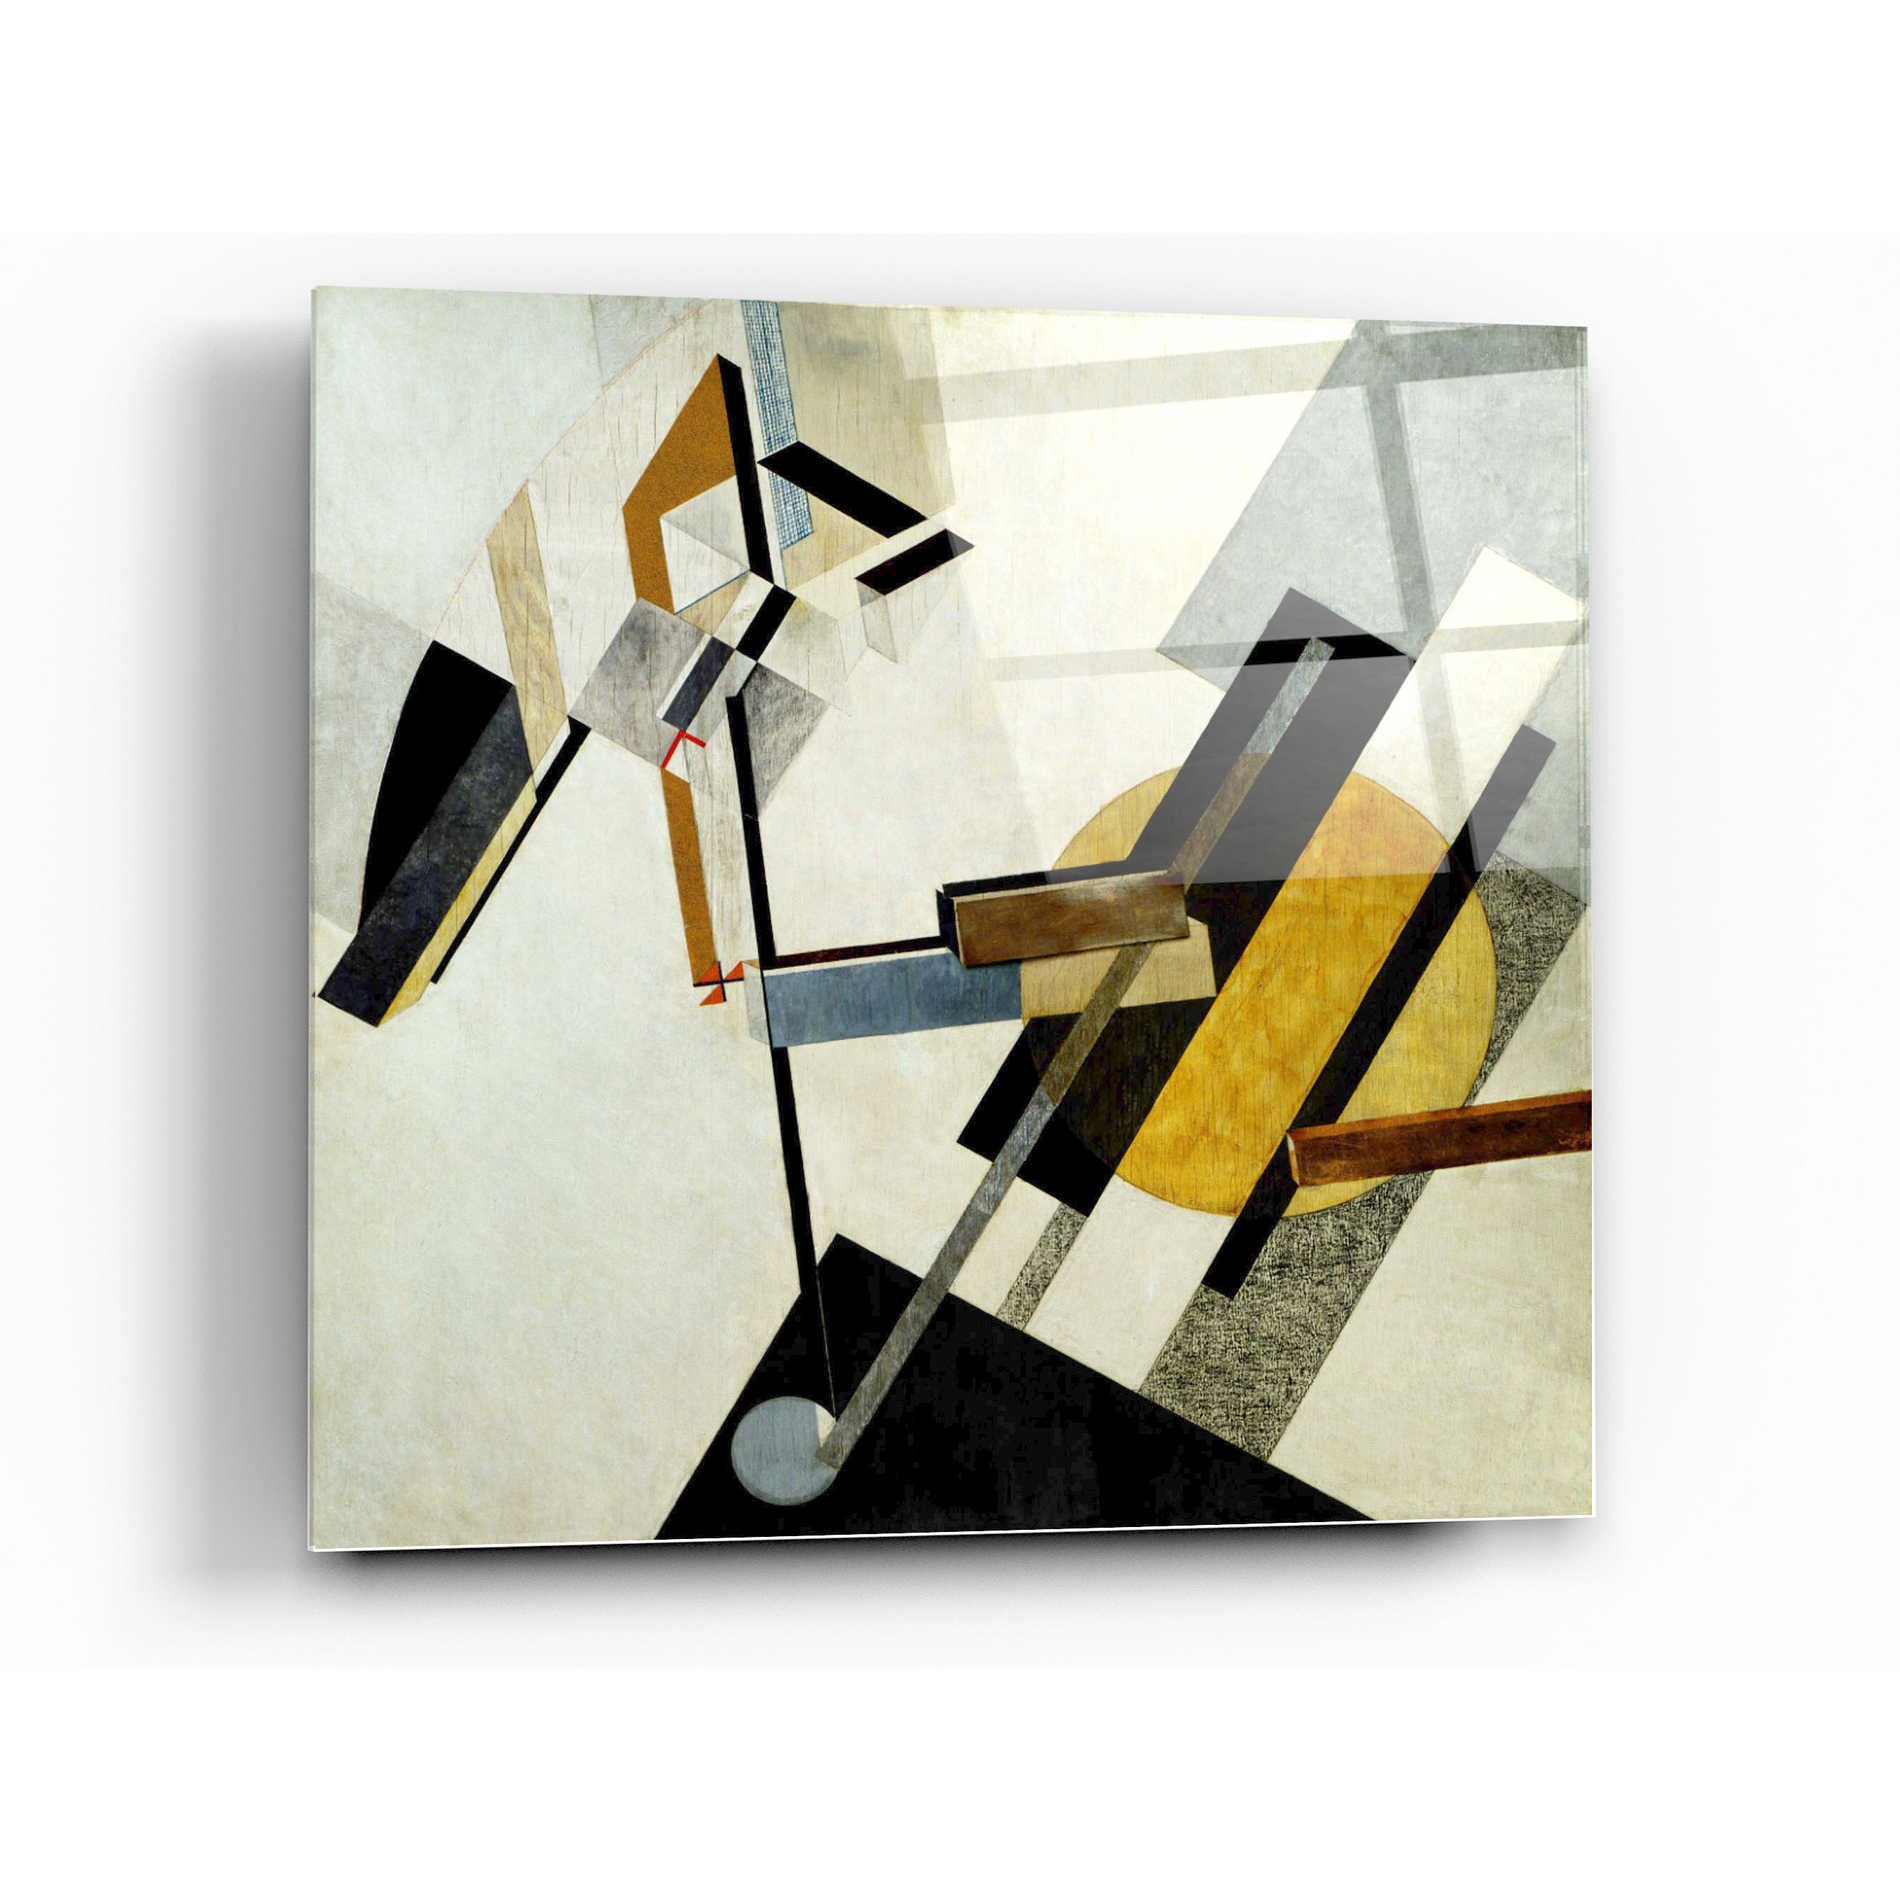 Epic Art 'Proun 19D' by El Lissitzky Acrylic Glass Wall Art,24x24